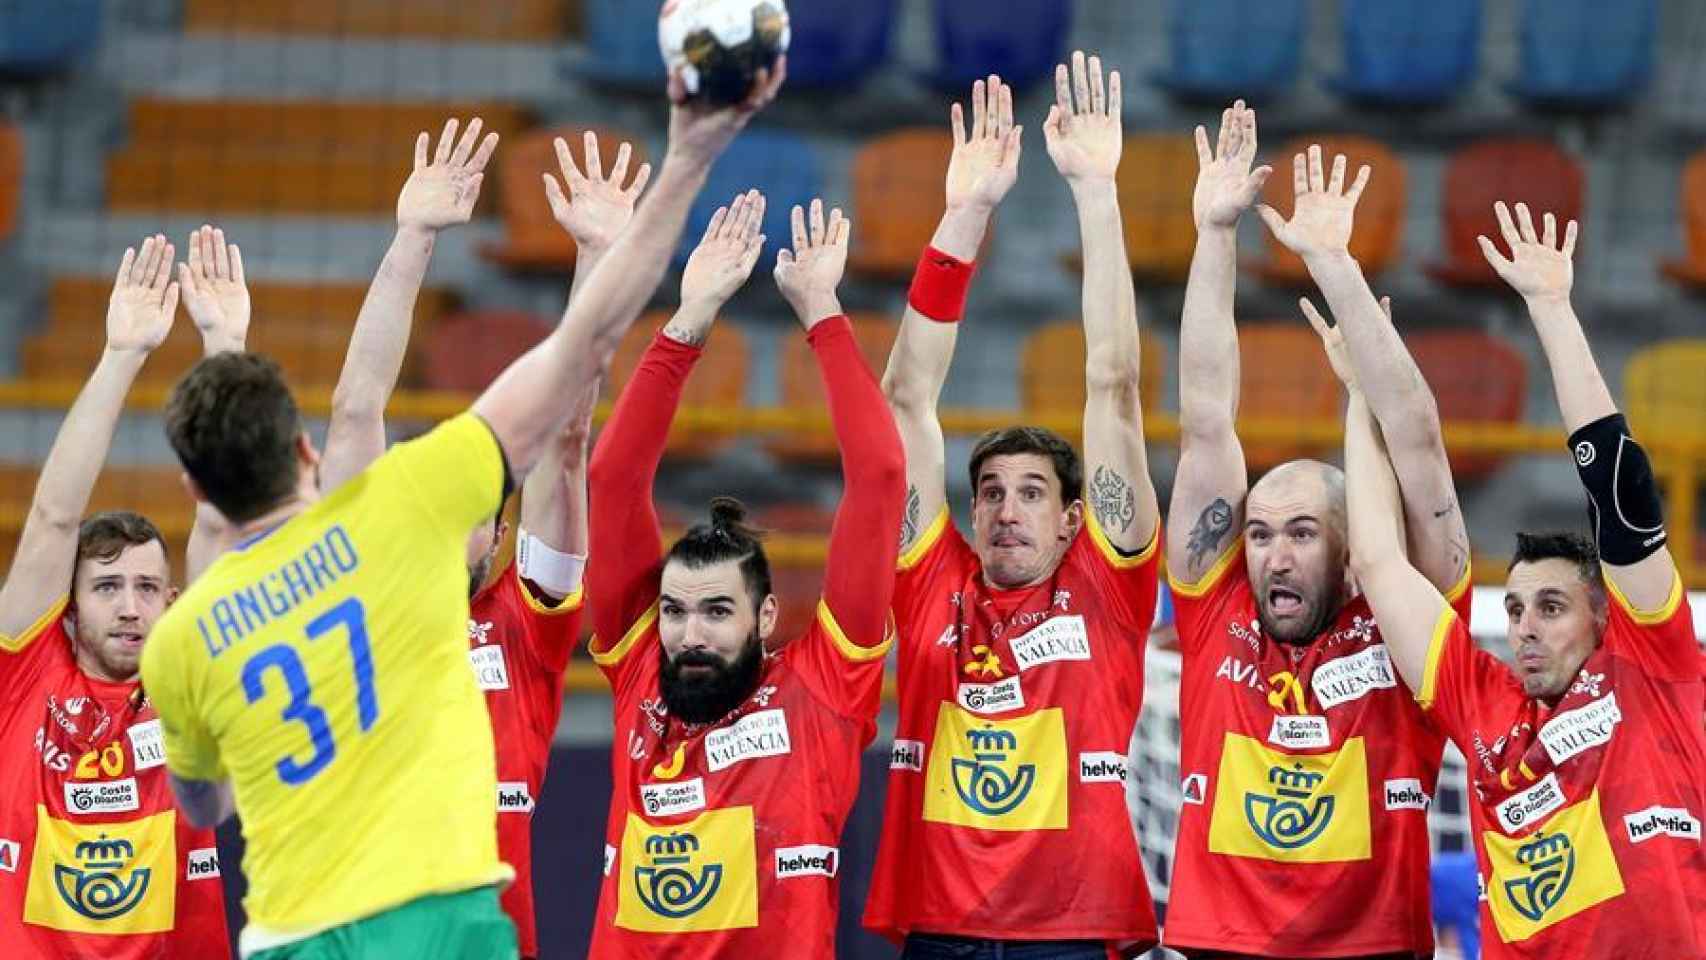 Brasil lanzando ante España en el Mundial de balonmano